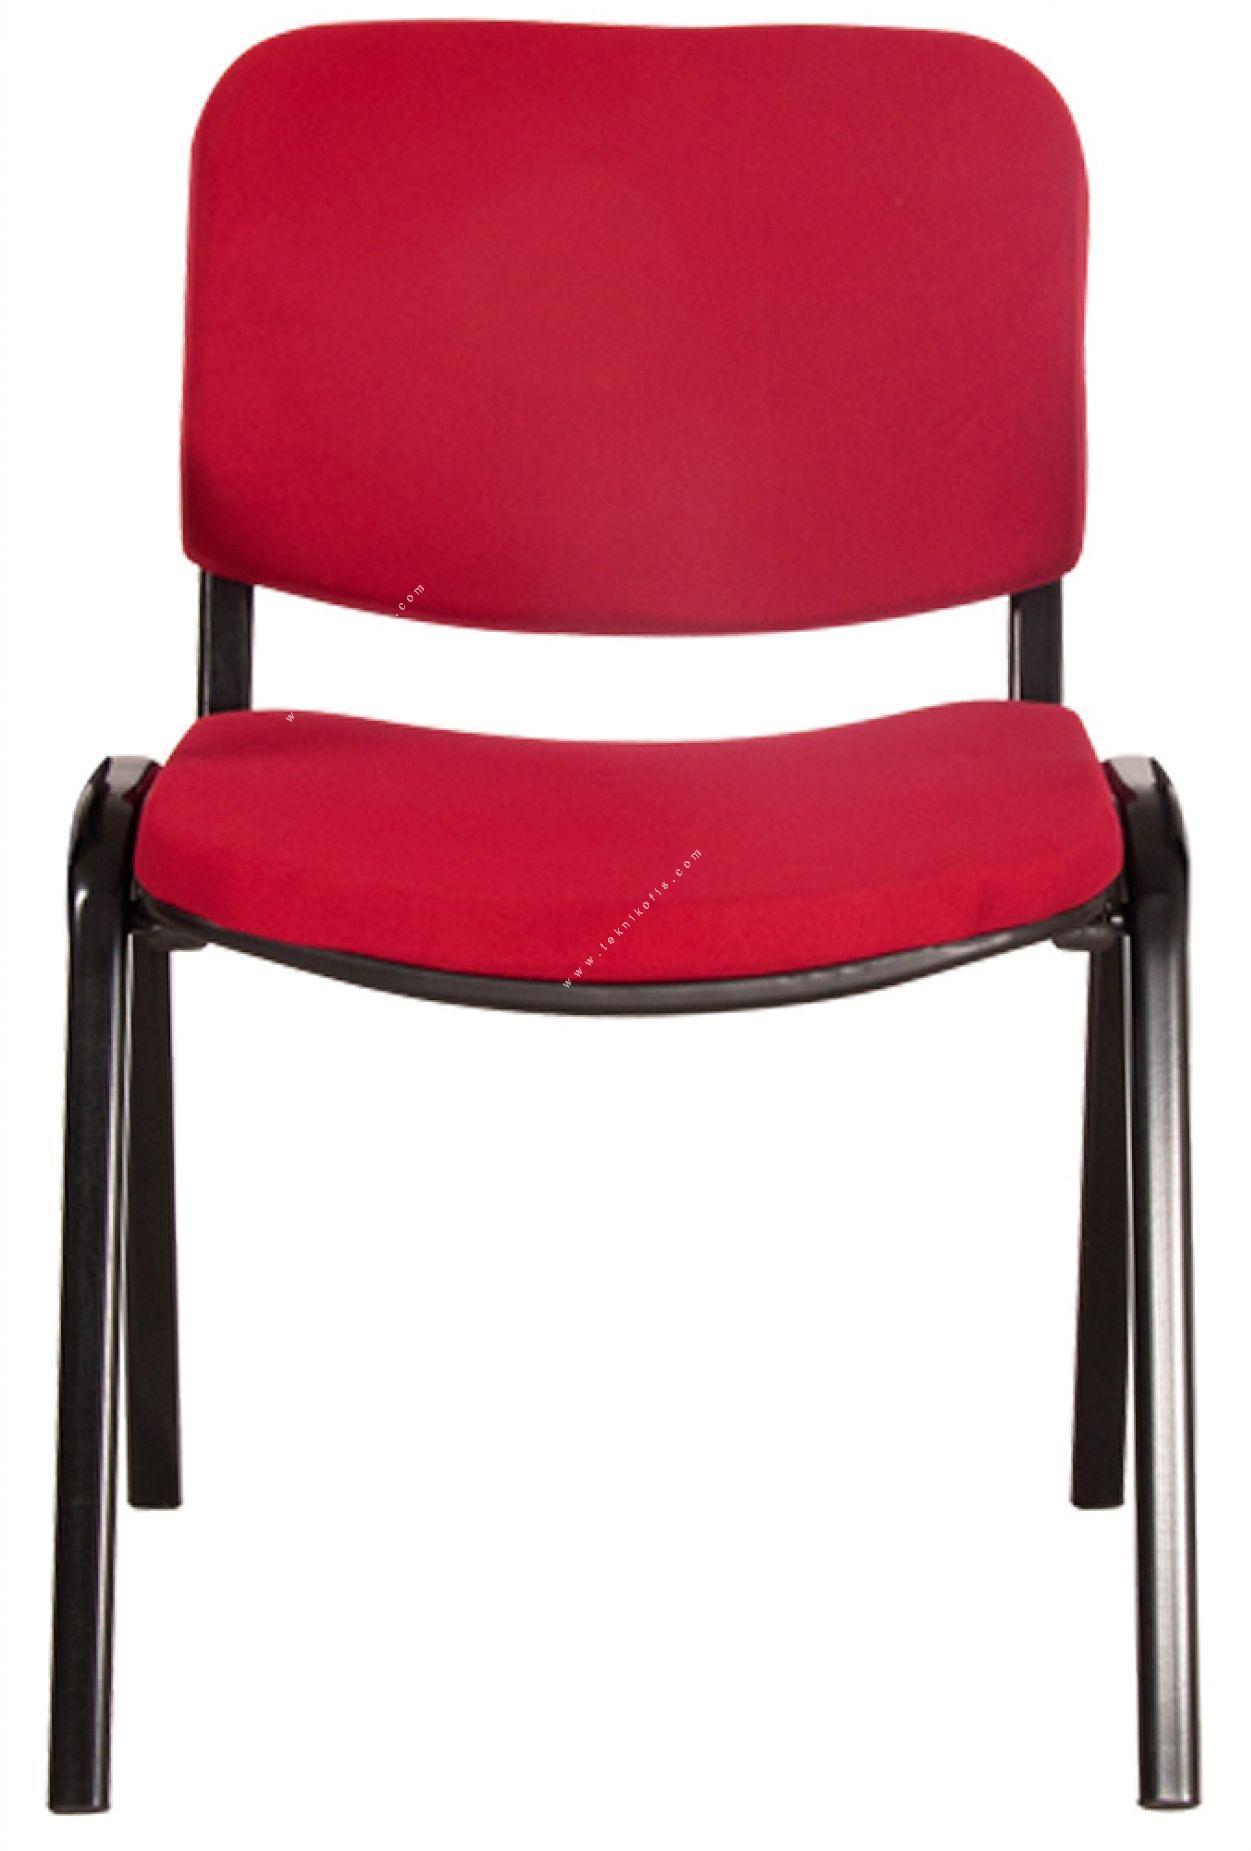 form sandalye boyalı ayaklı